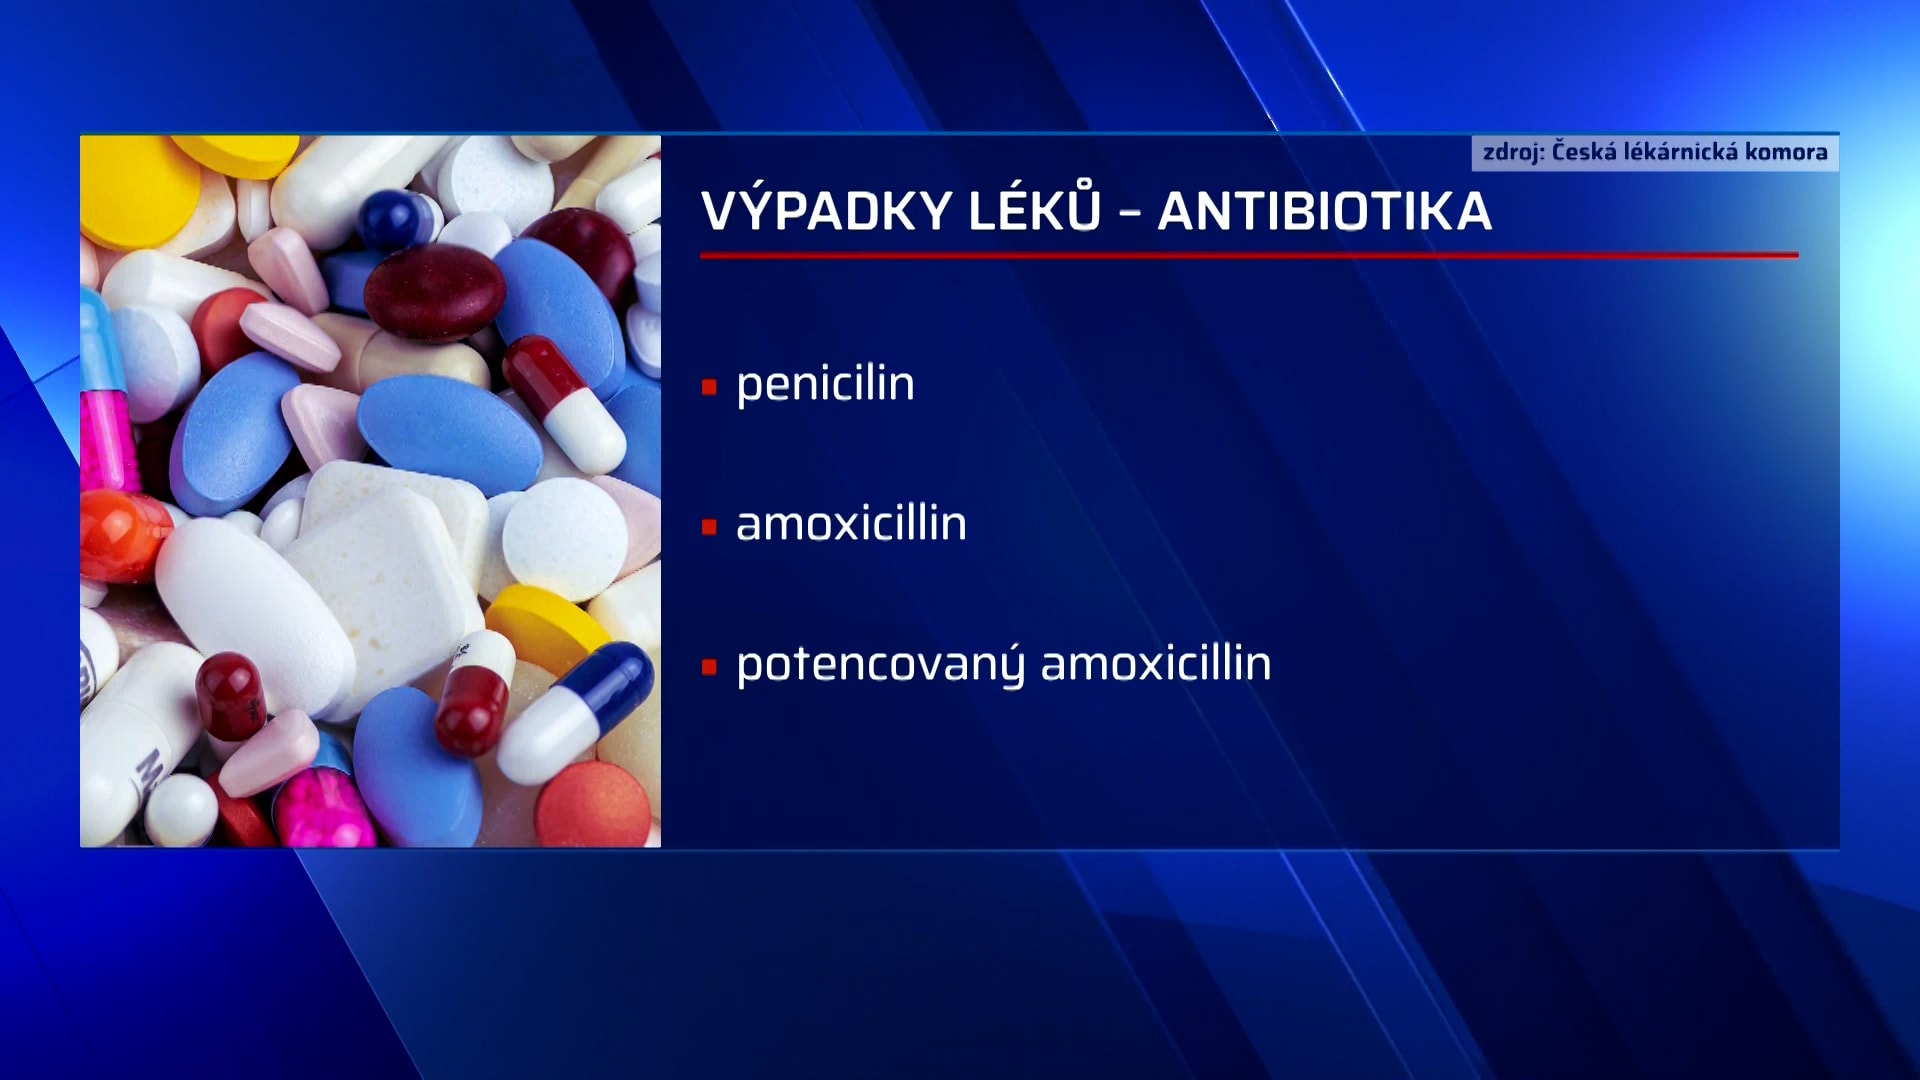 Česko se na prahu chřipkové epidemie potýká s nedostatkem léků pro děti.